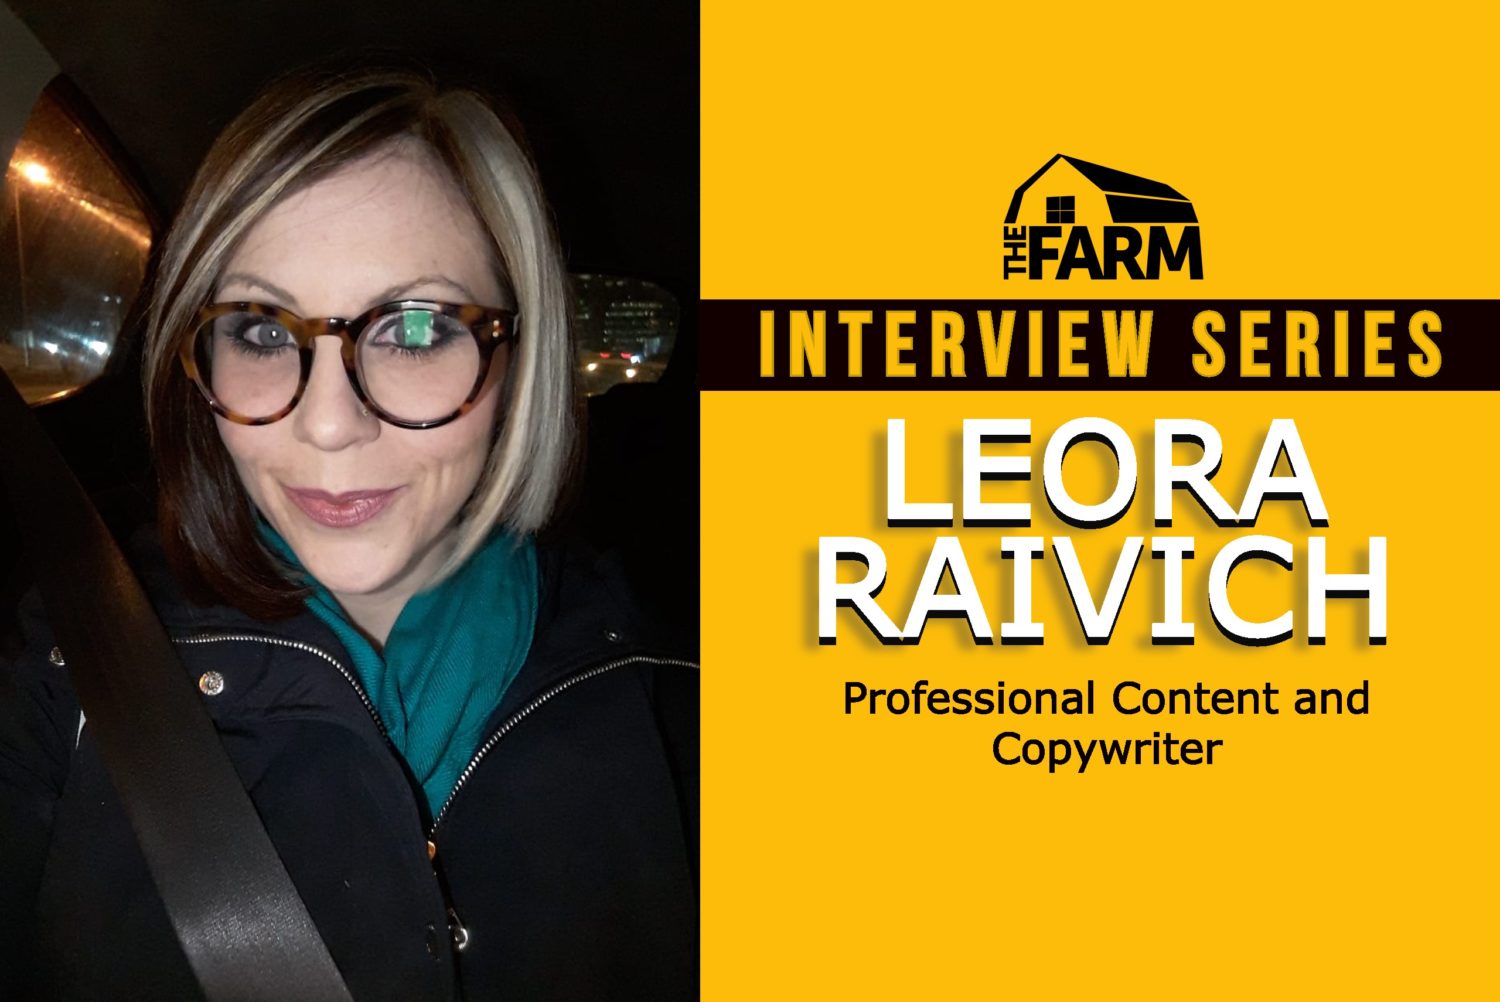 leora raivich interview